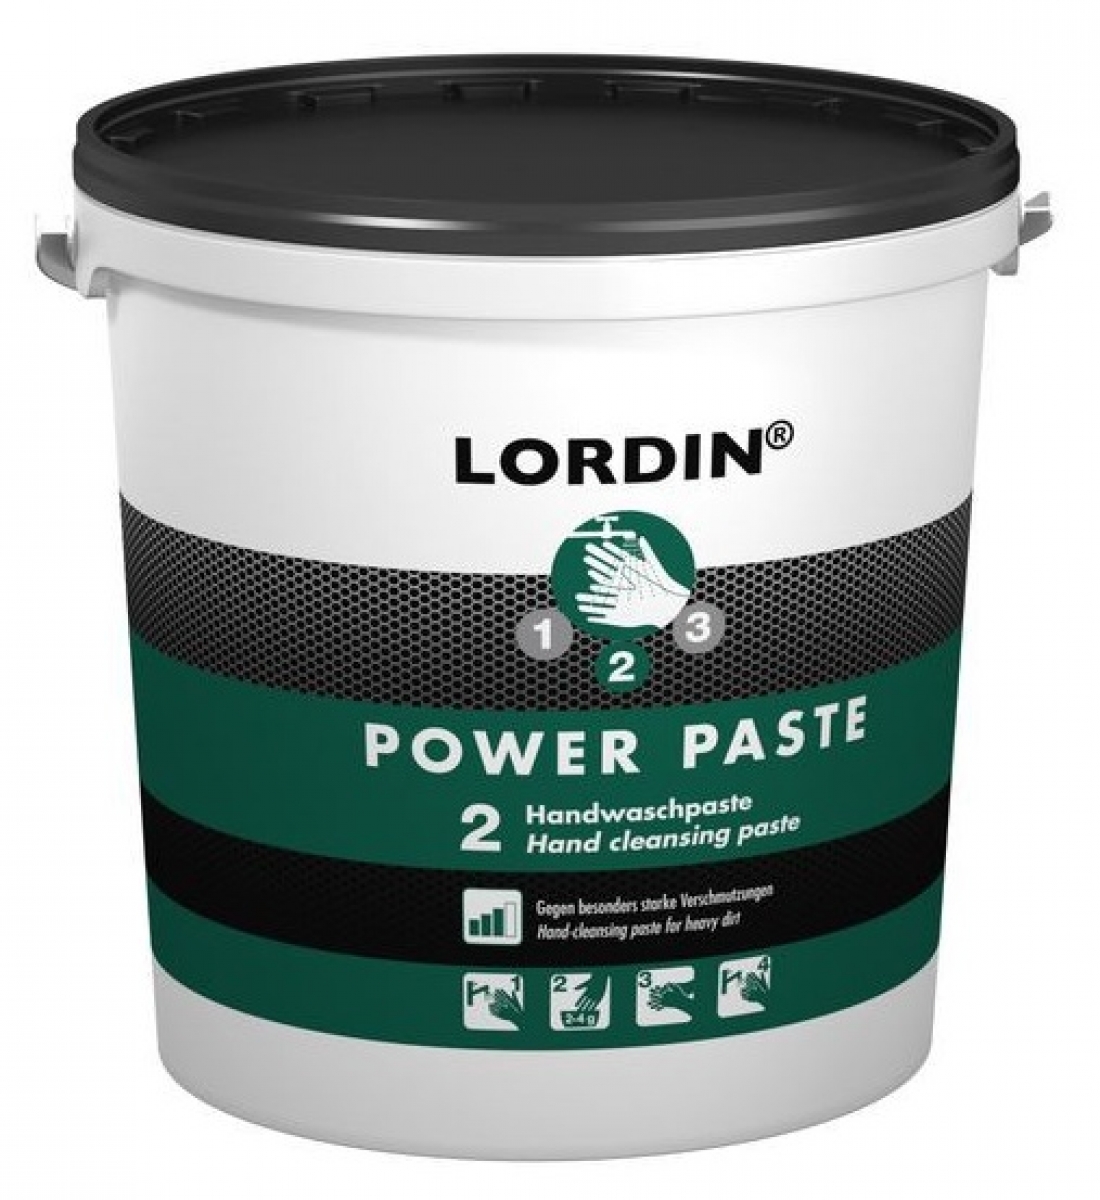 GREVEN-Hygiene, HAUTREINIGUNG, `Lordin Power Paste`, 10 Liter Eimer